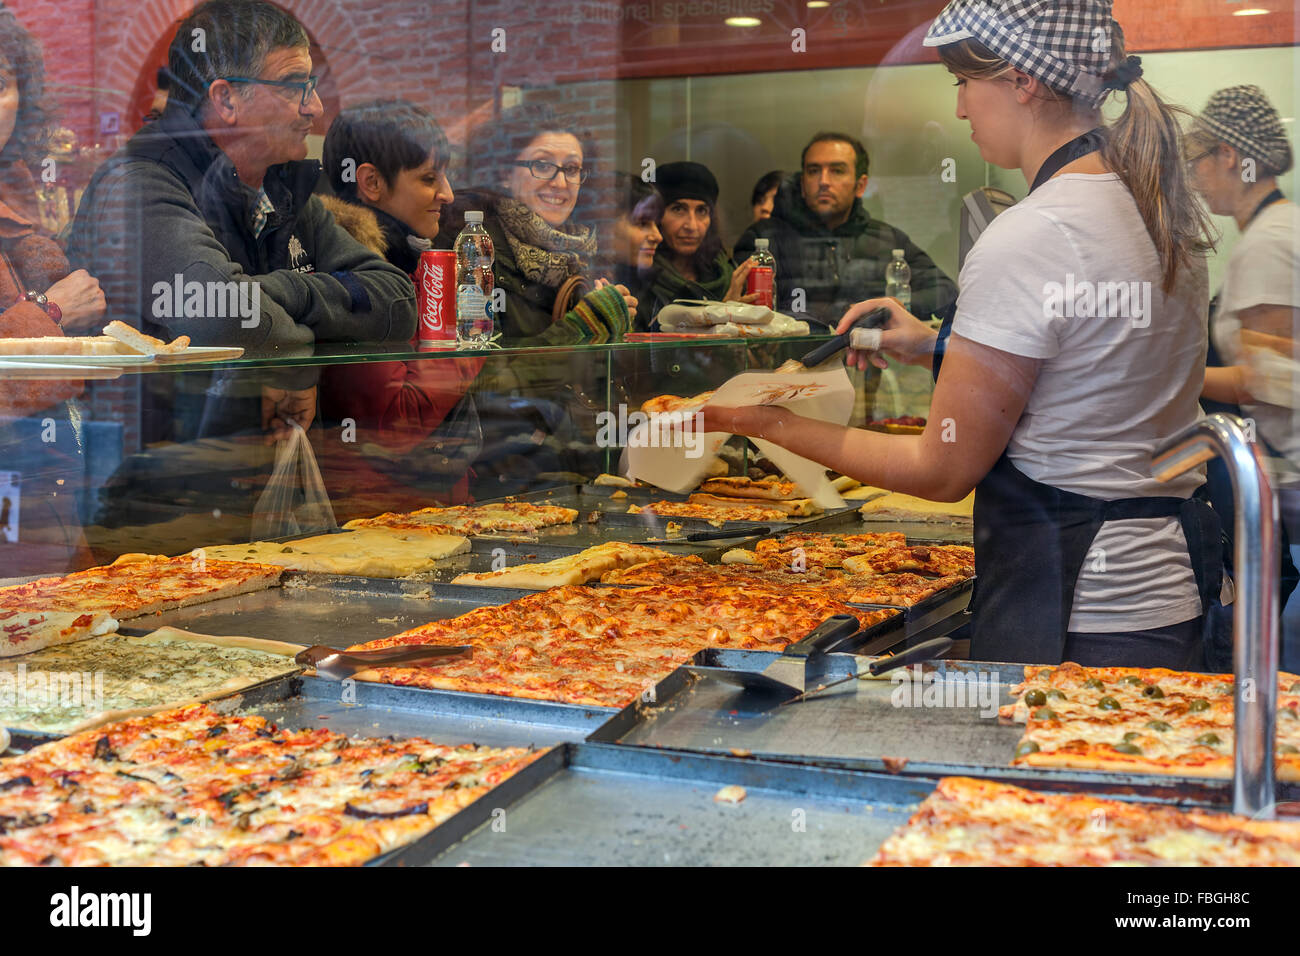 Les gens à l'intérieur de la pizzeria Pizza achat typique à Alba, Italie. Banque D'Images